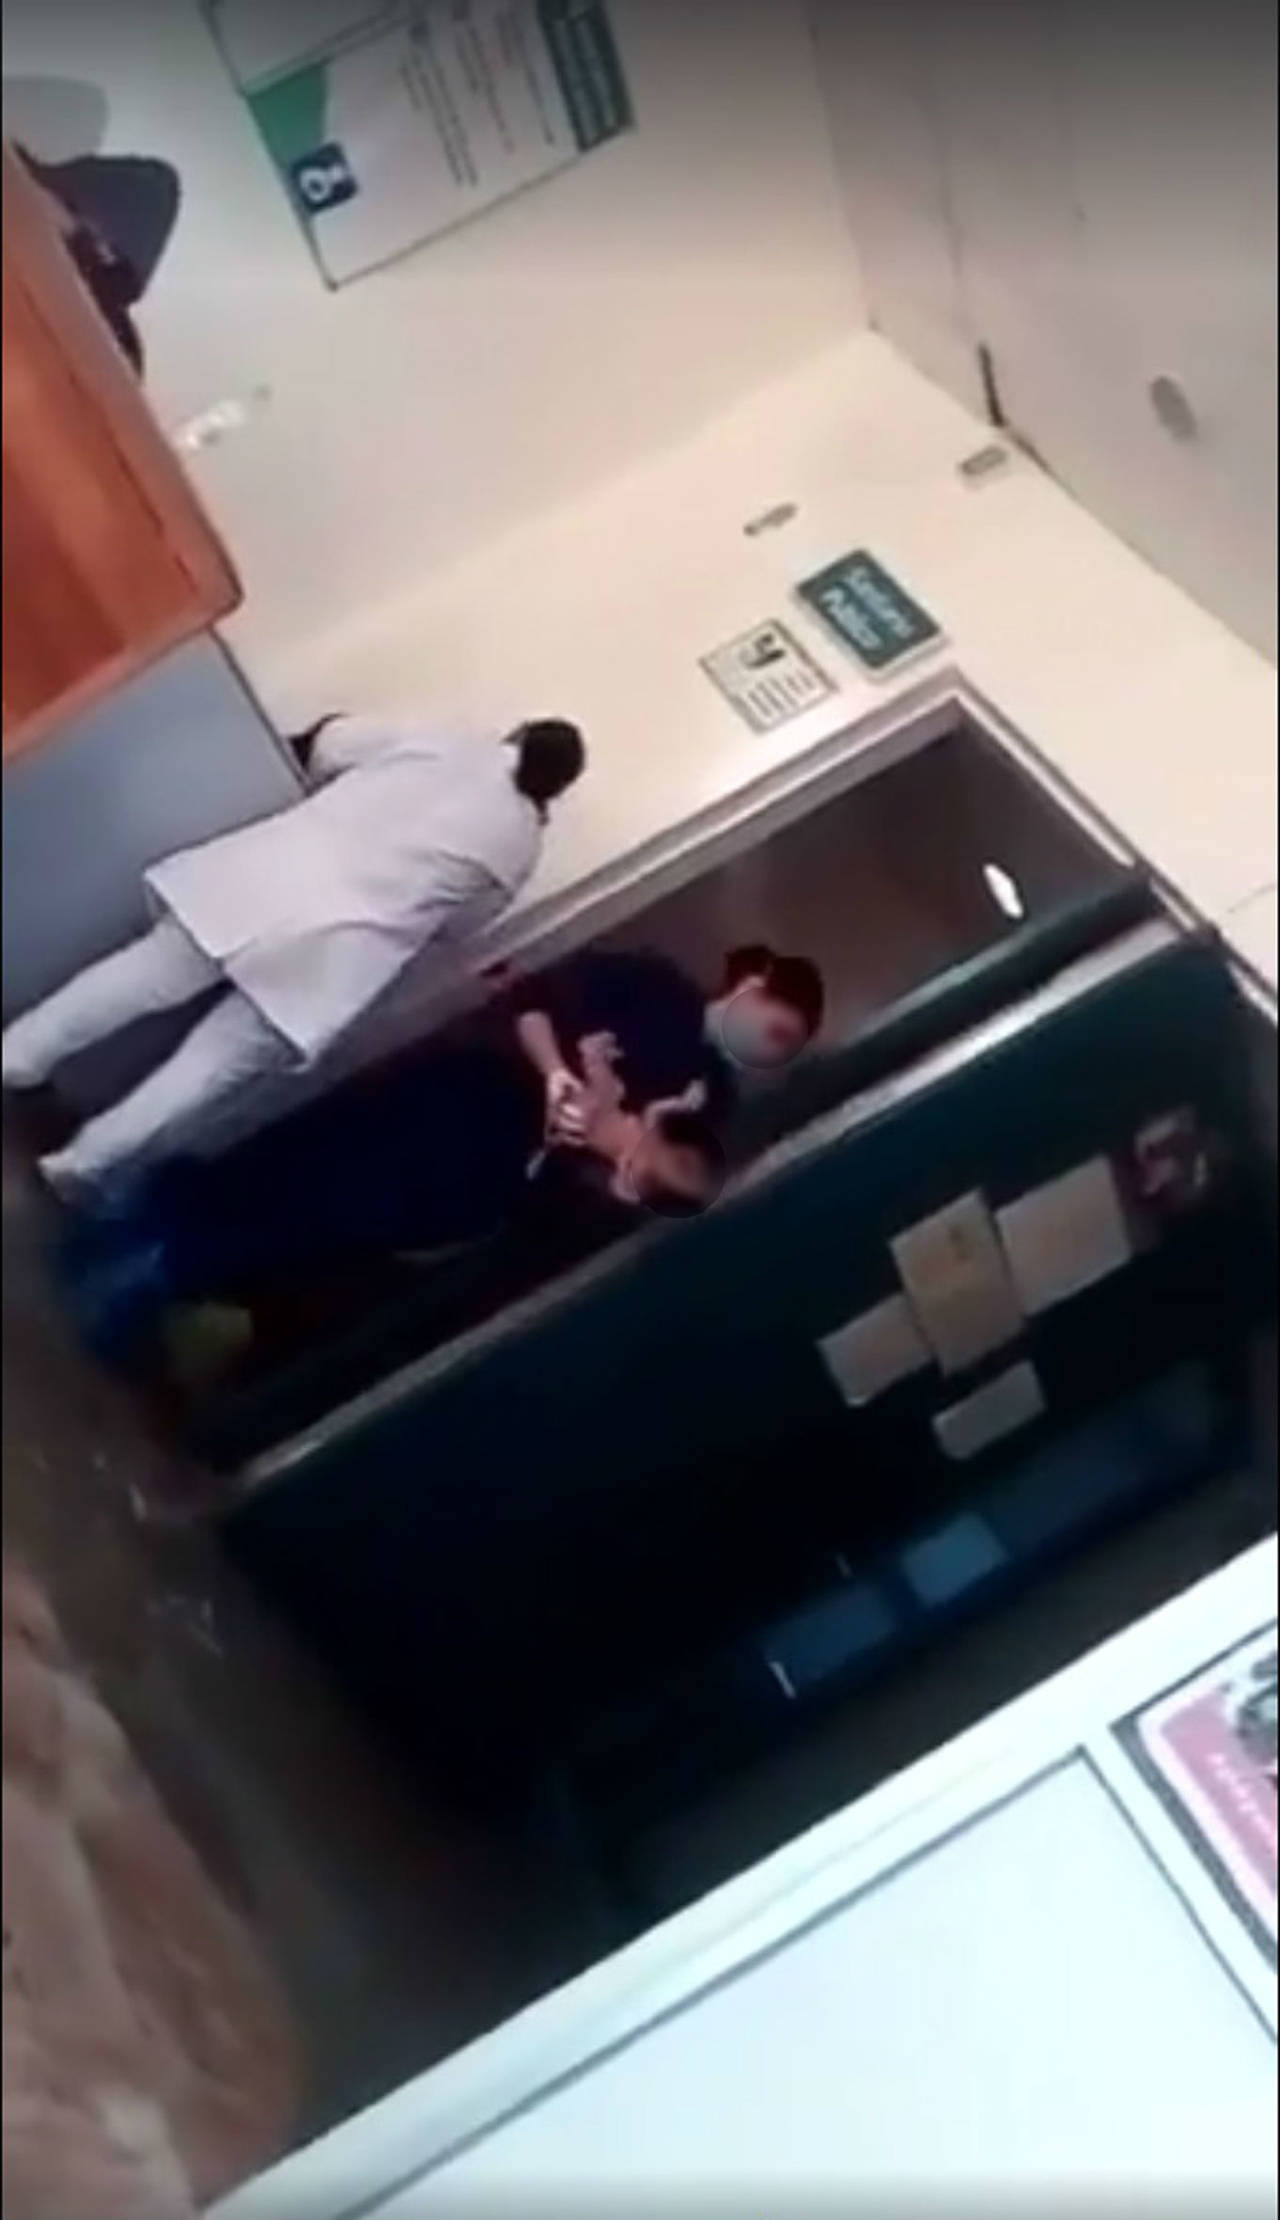 Video. Cerca de la mitad del video se puede observar cuando personal del hospital saca al bebé del baño.